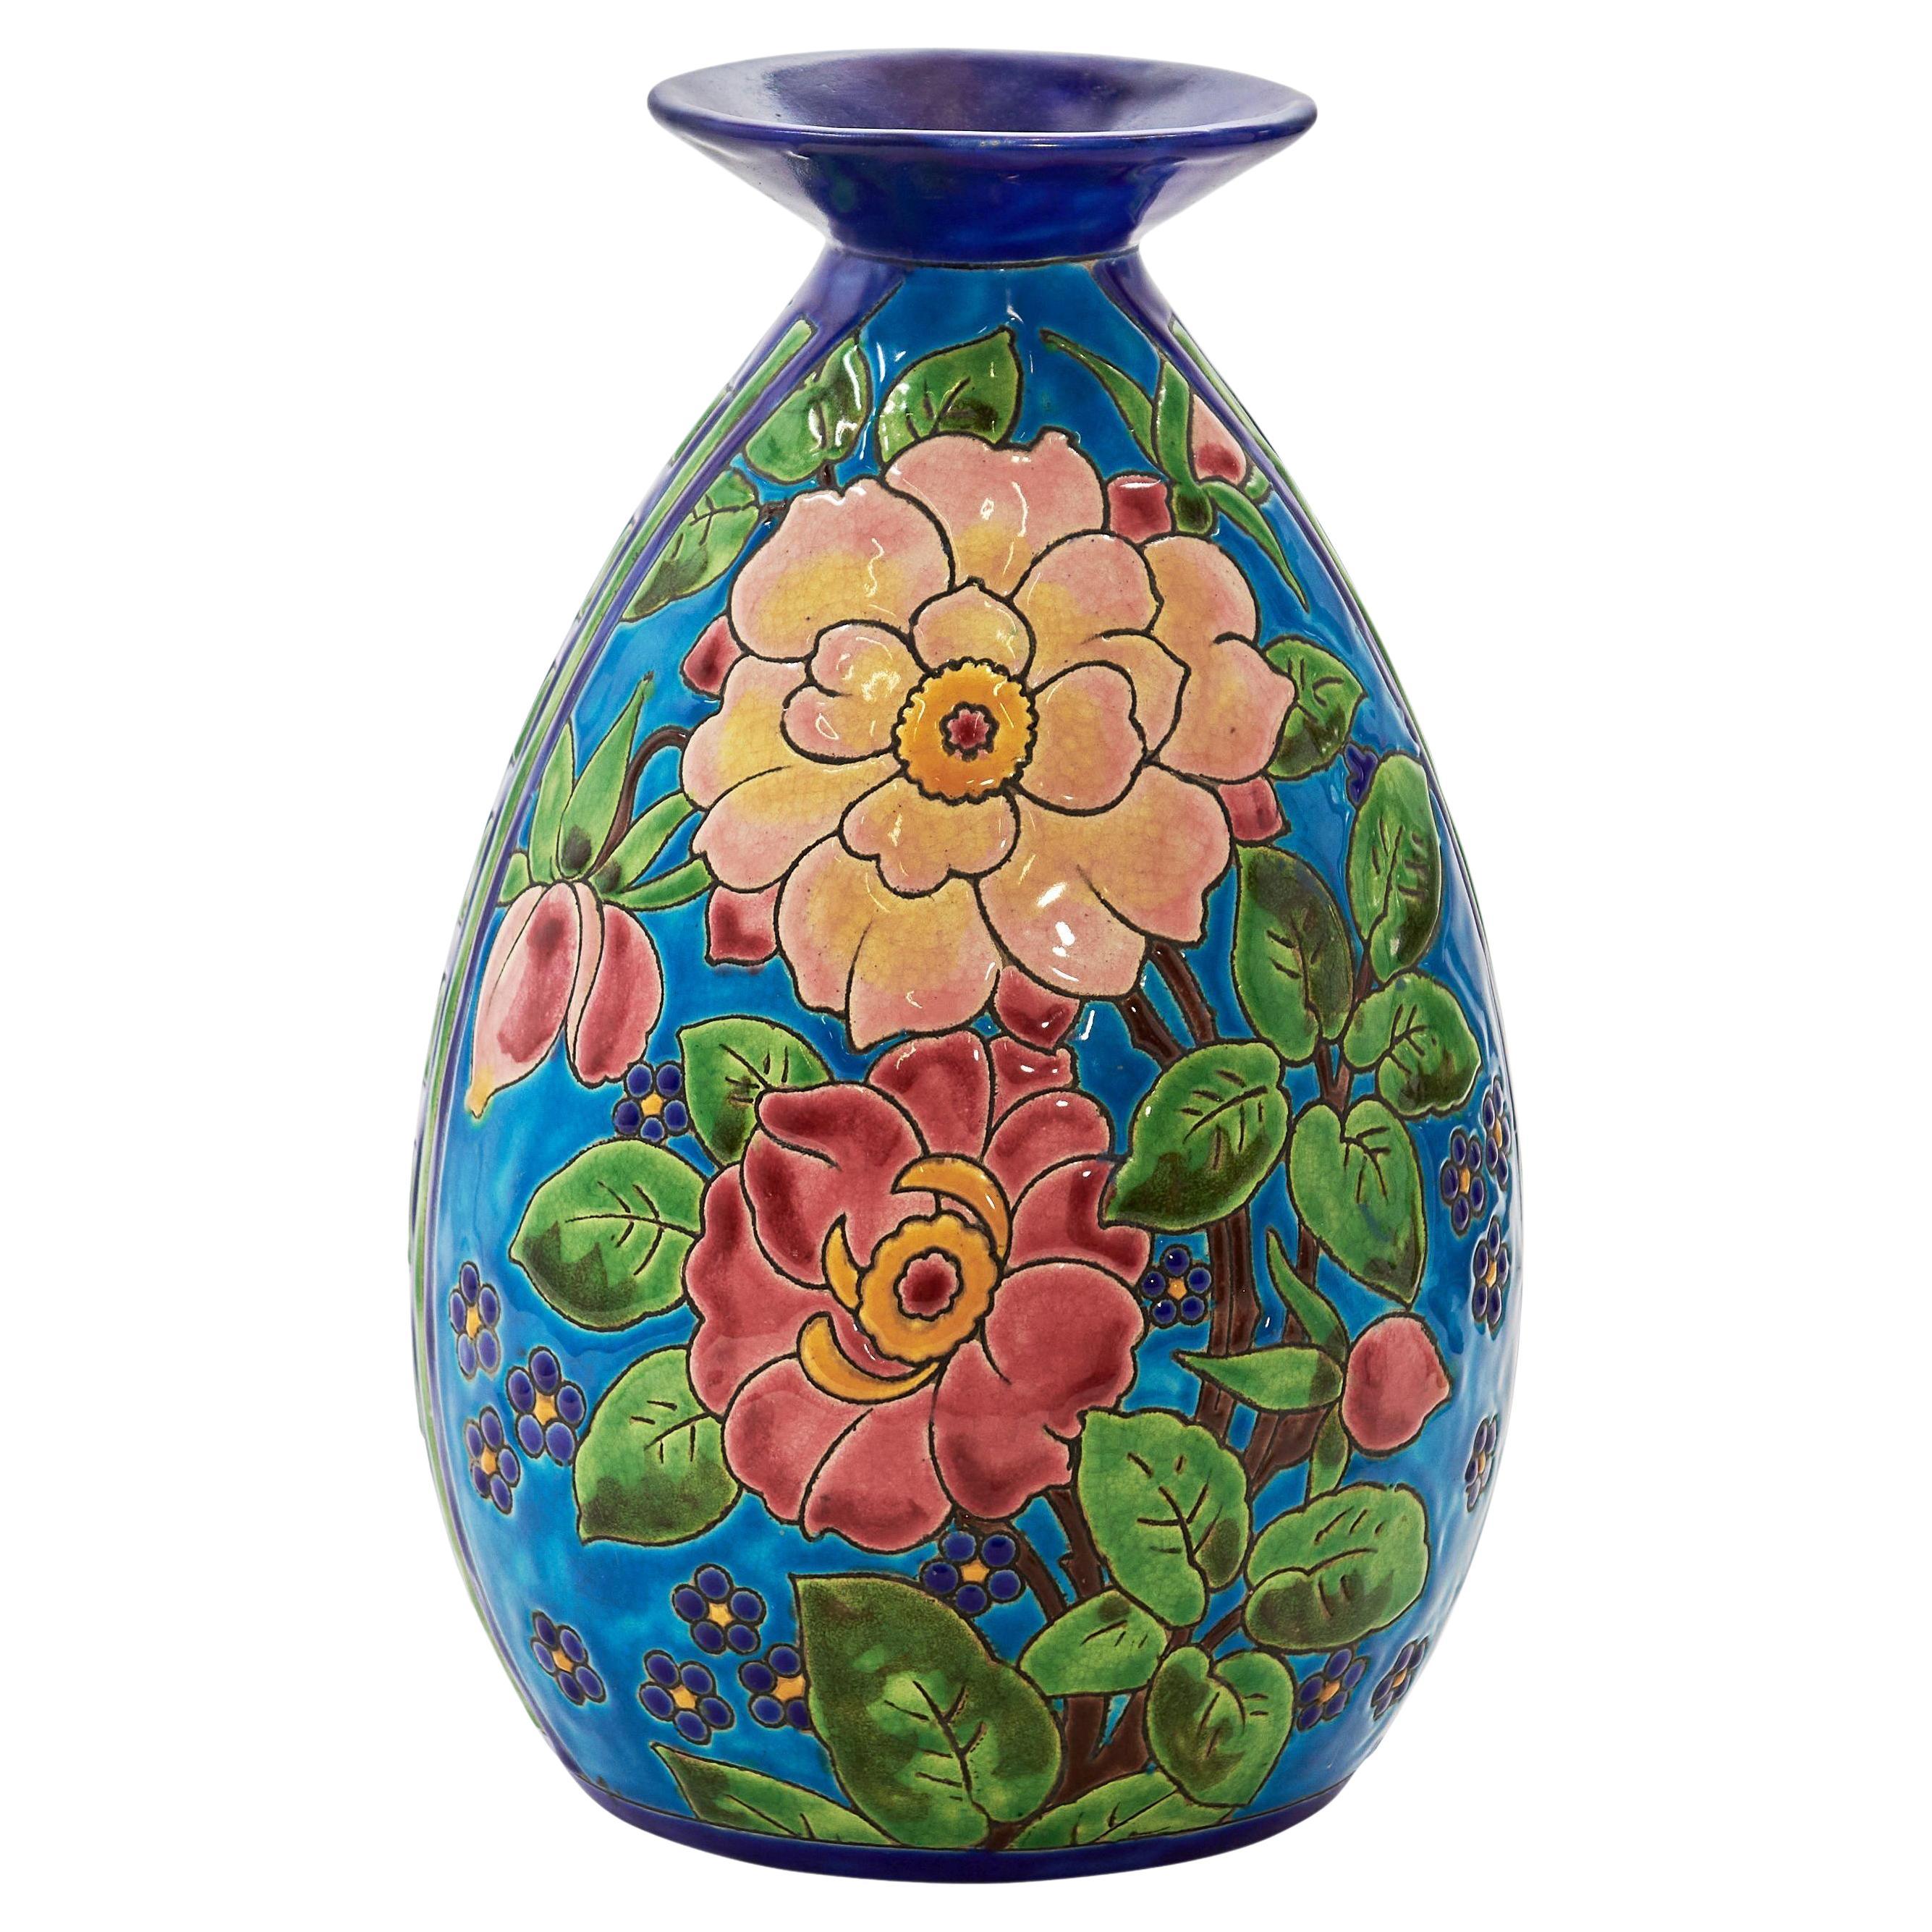 CATTEAU Charles, Boch KERAMIS FRERES Vase "Fleurs" 1933